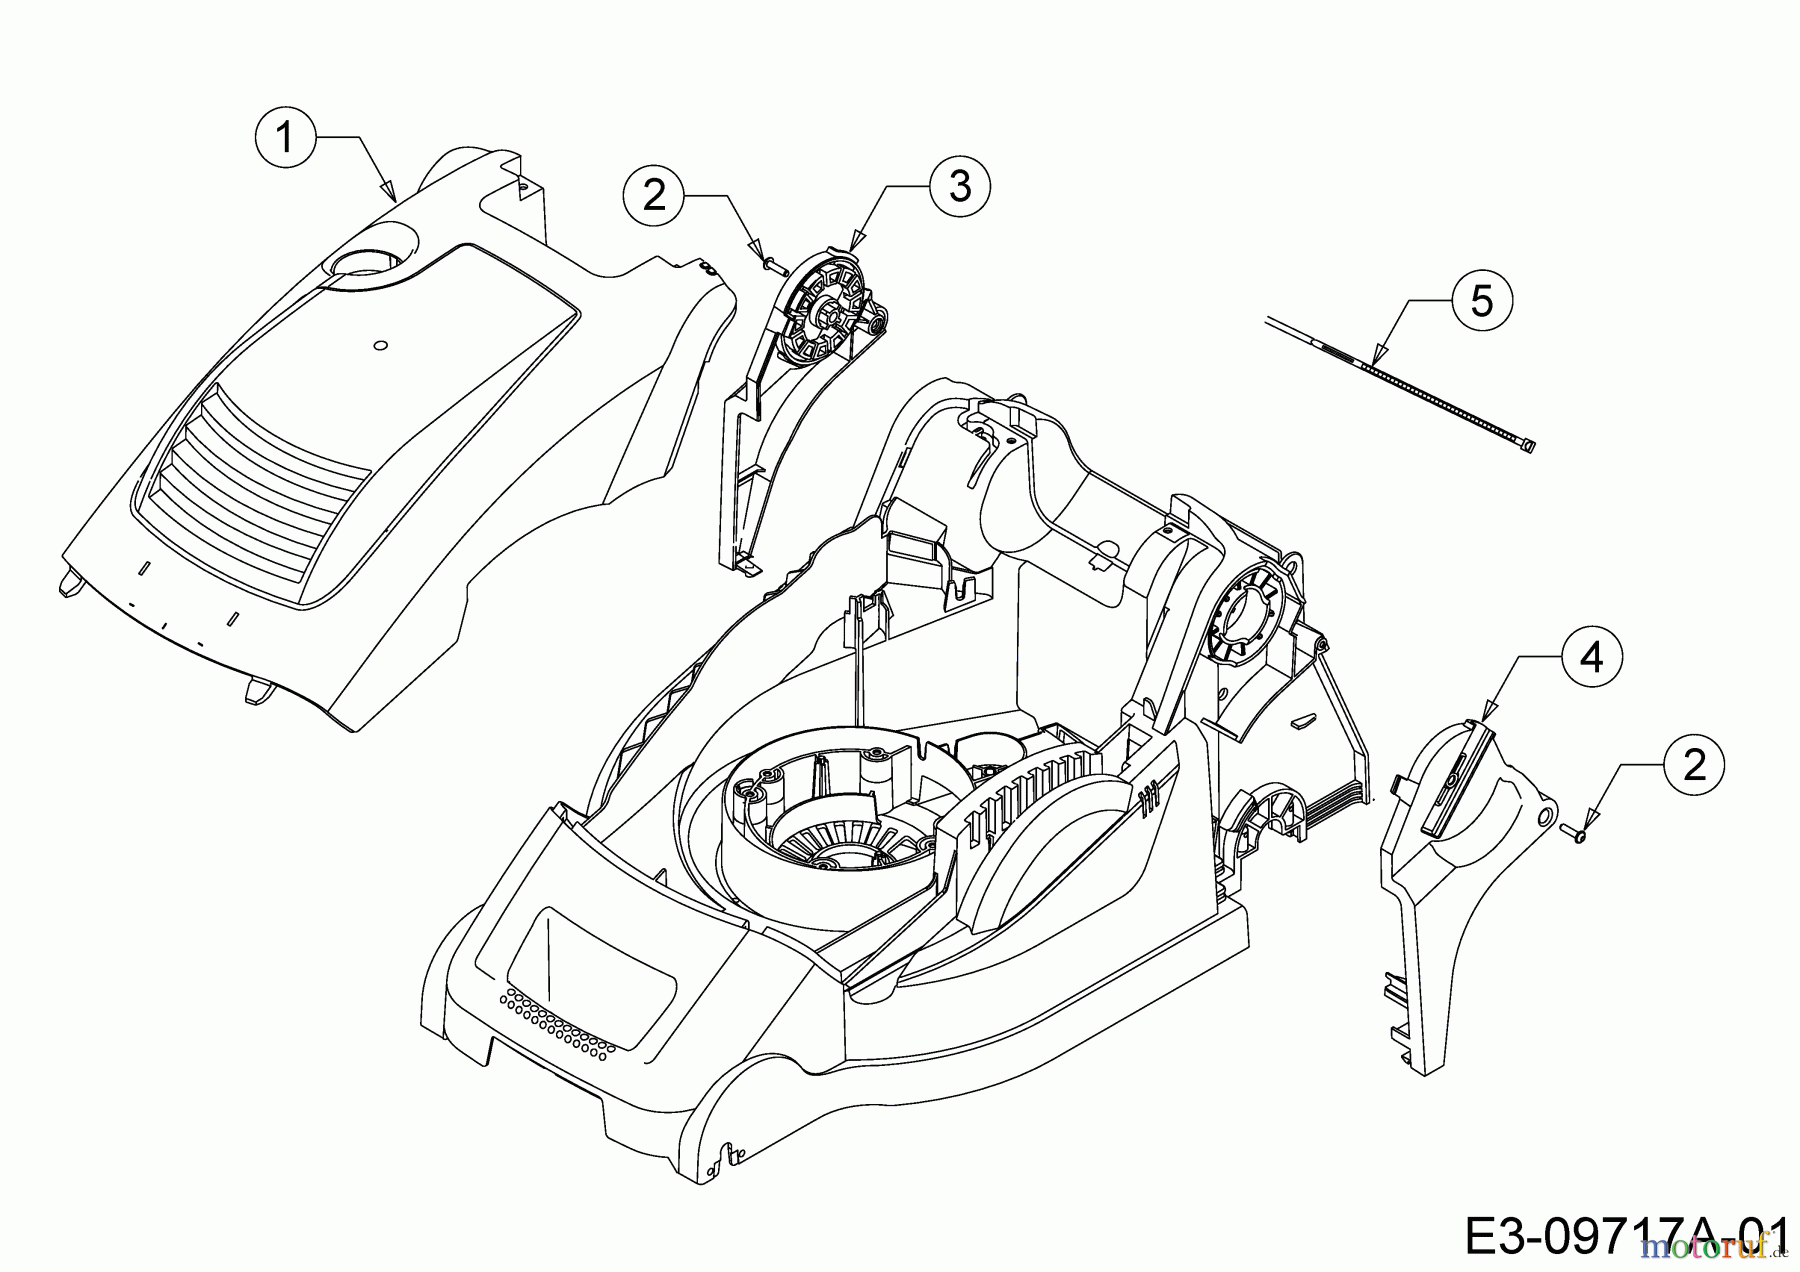  Wolf-Garten Elektromäher mit Antrieb A 400 EA 18CRMLM1650  (2019) Abdeckung seitlich, Motorhaube